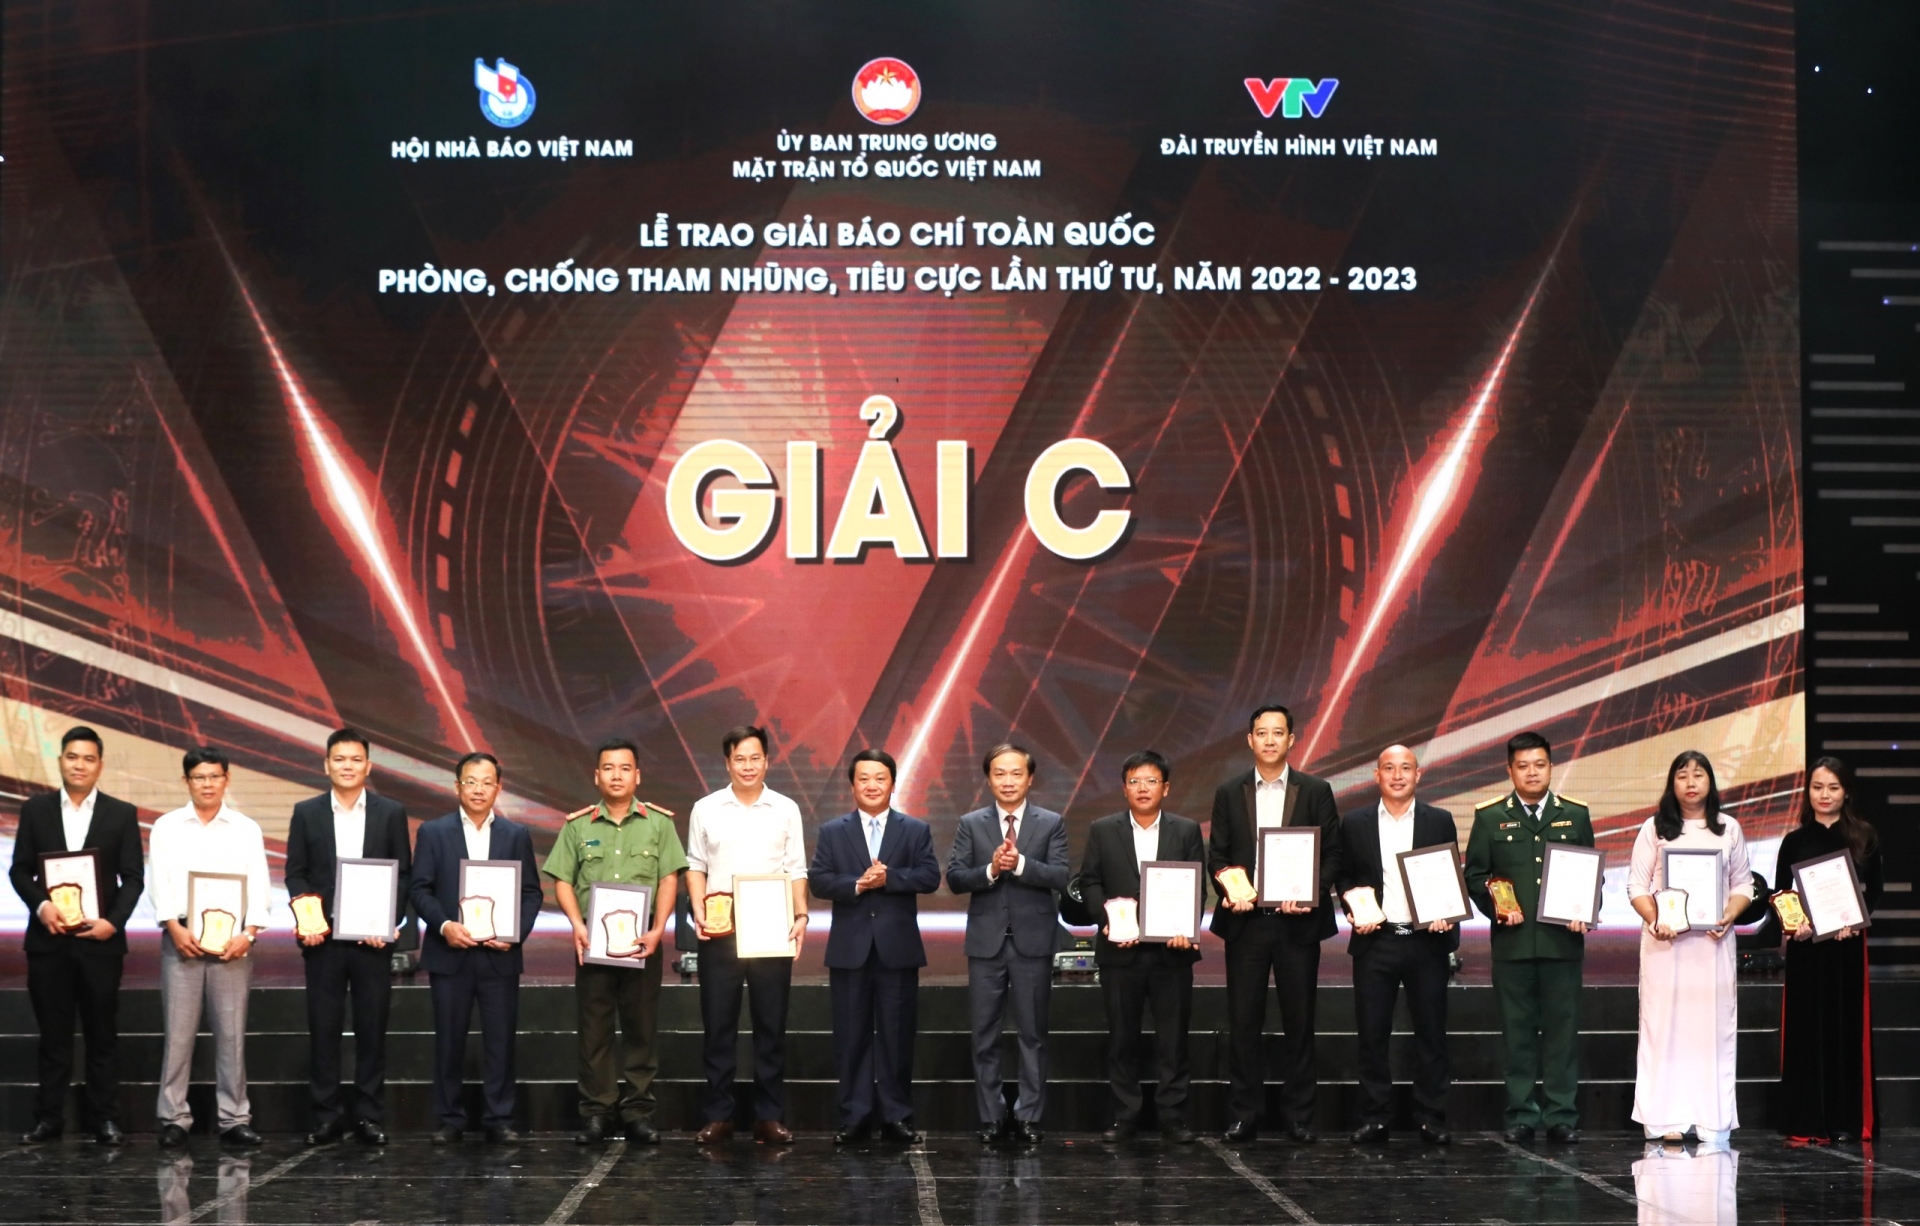 Báo Lâm Đồng đoạt giải C Giải Báo chí toàn quốc về phòng, chống tham nhũng, tiêu cực năm 2022 - 2023